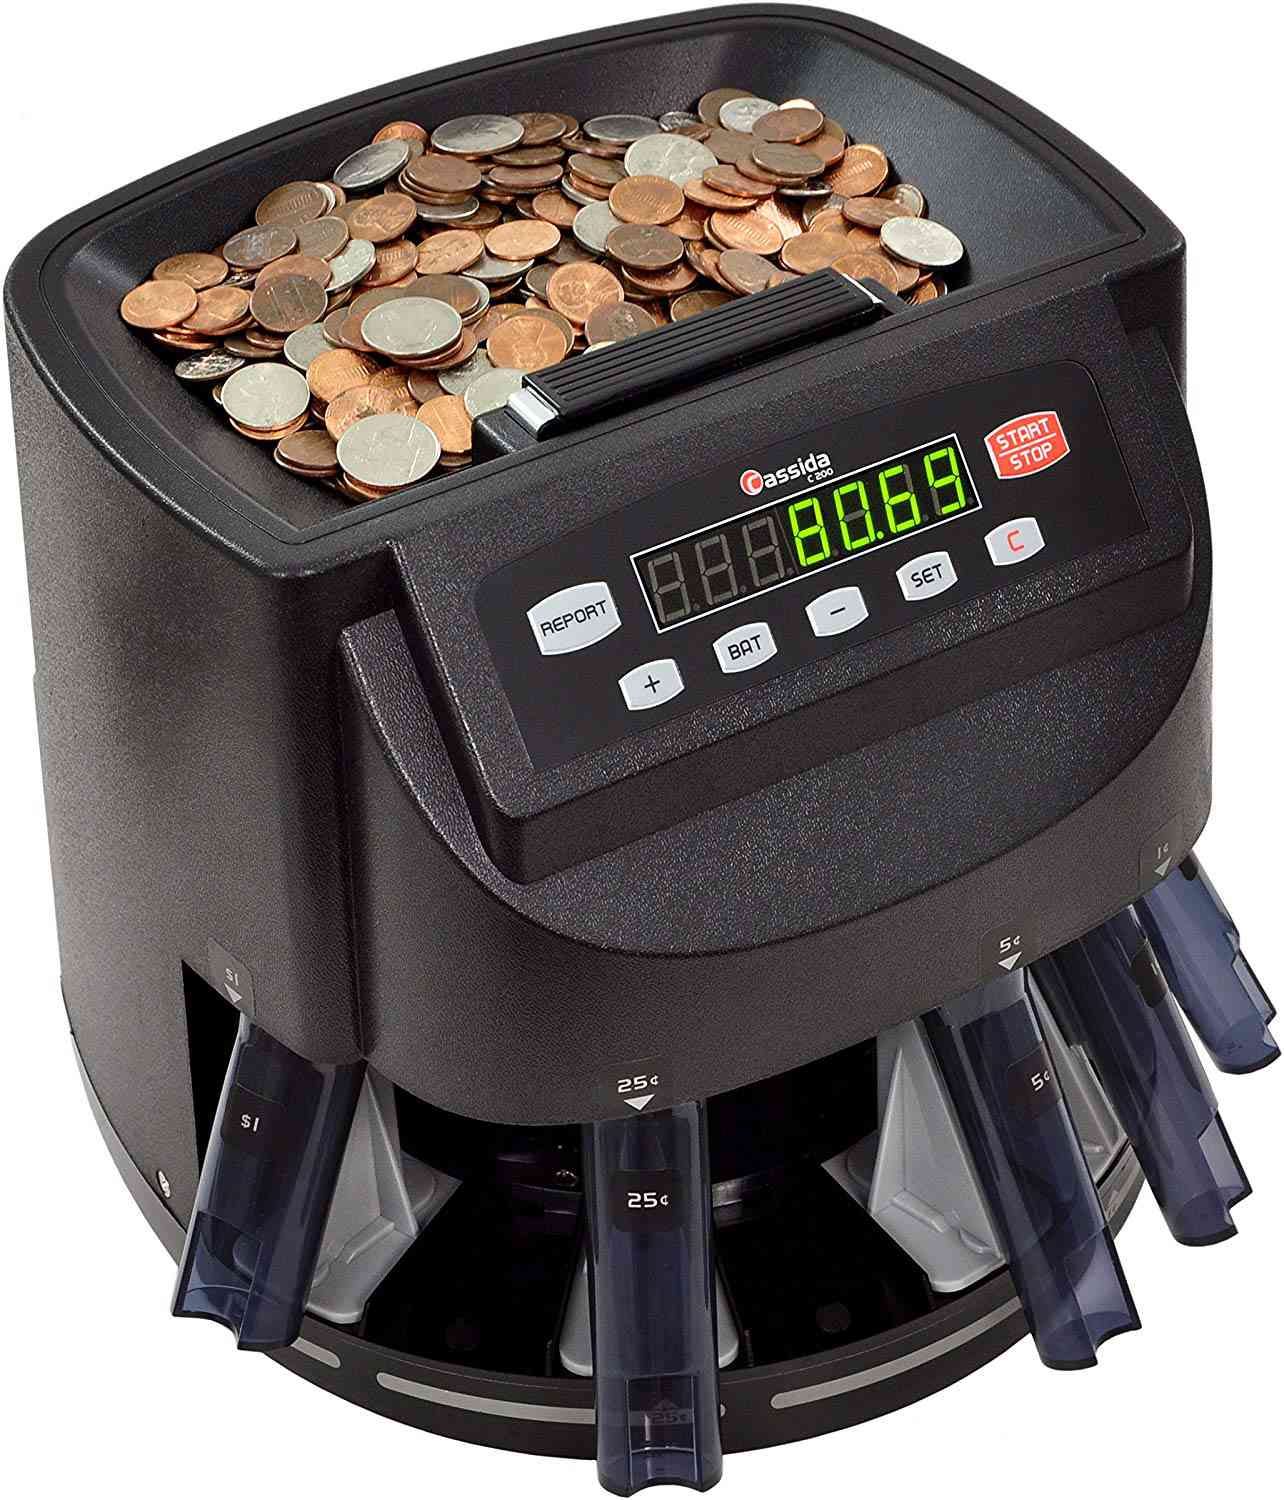 卡西达C200硬币分拣机，计数器和滚轮